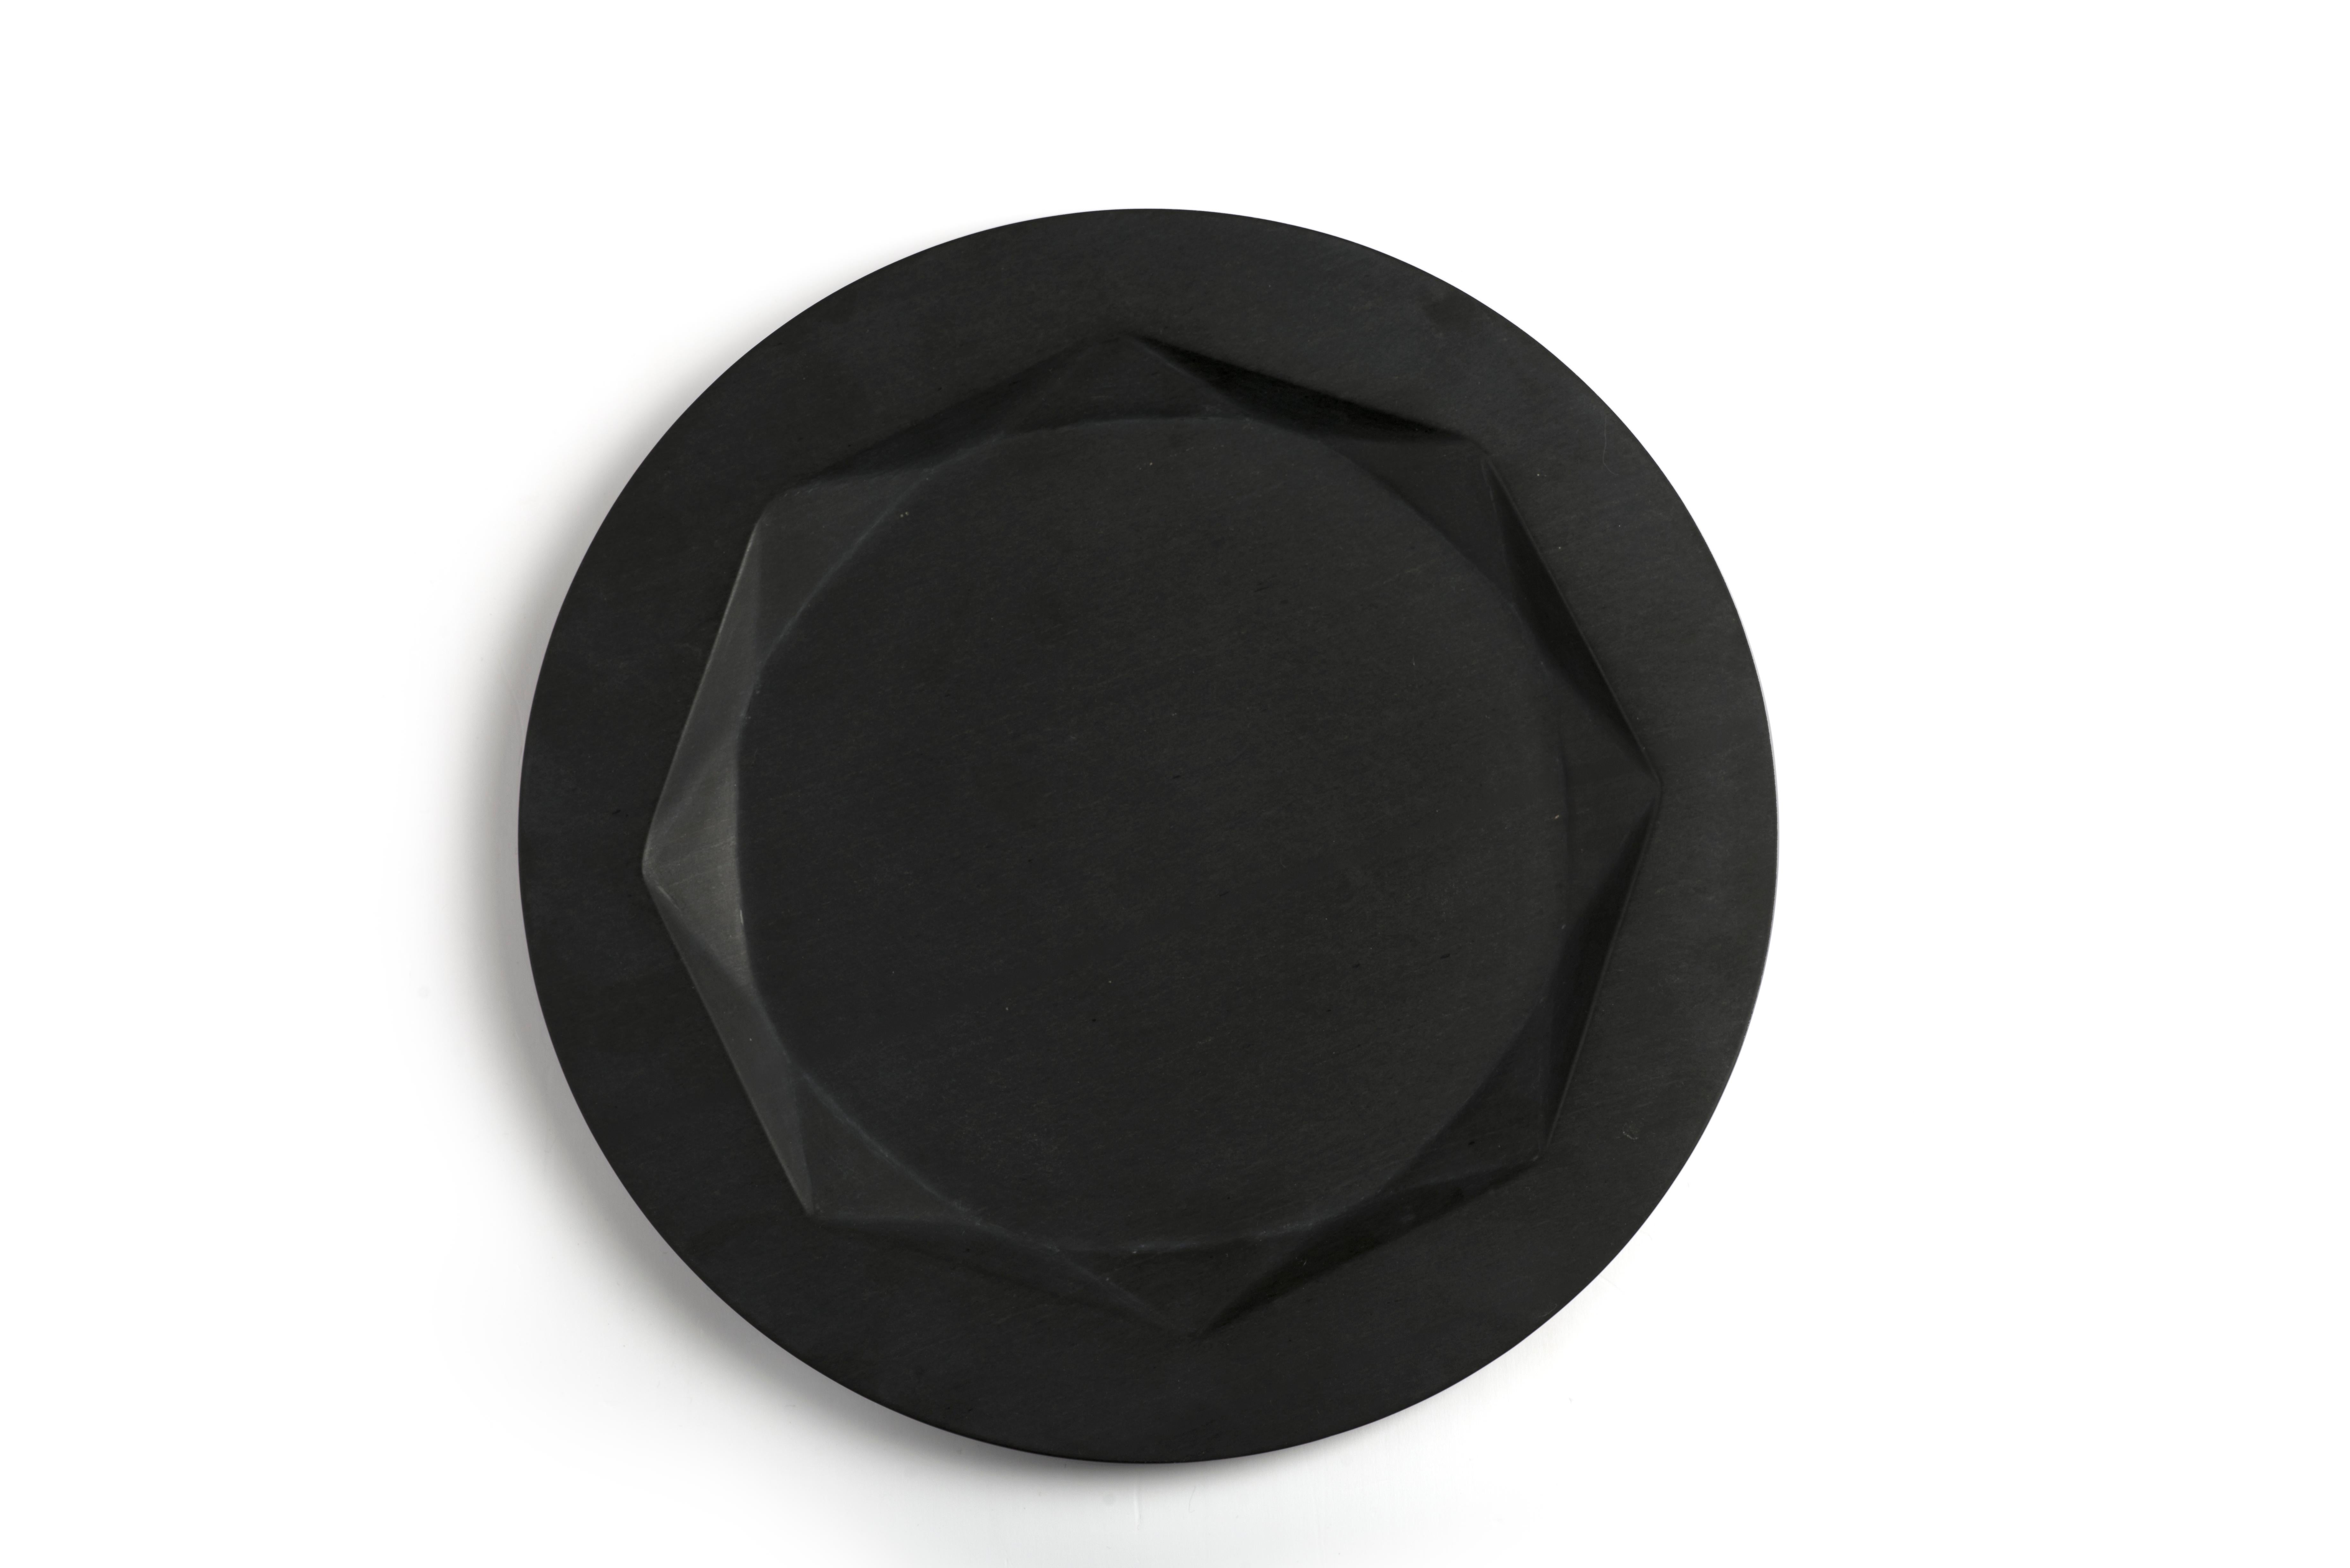 Les assiettes en ardoise noire Jewel de Kunaal Kyhaan pour KOY sont sculptées de manière sophistiquée à l'aide de motifs de taille de pierres précieuses. La taille impératrice, traditionnellement utilisée pour la finition des diamants, est adaptée à